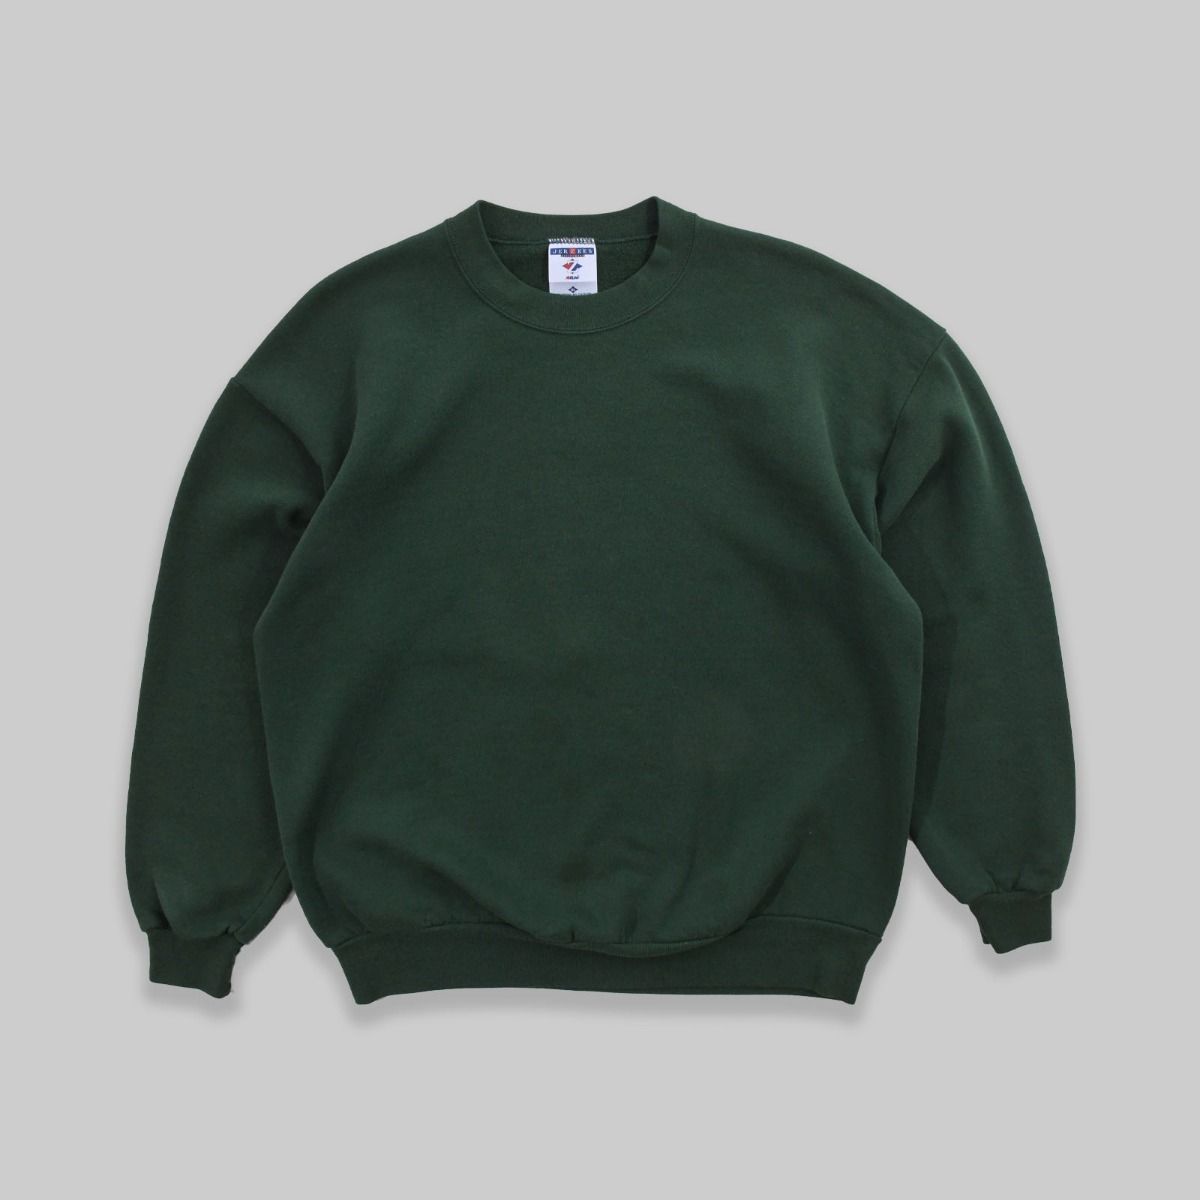 Jerzees Late 1990s Blank Sweatshirt